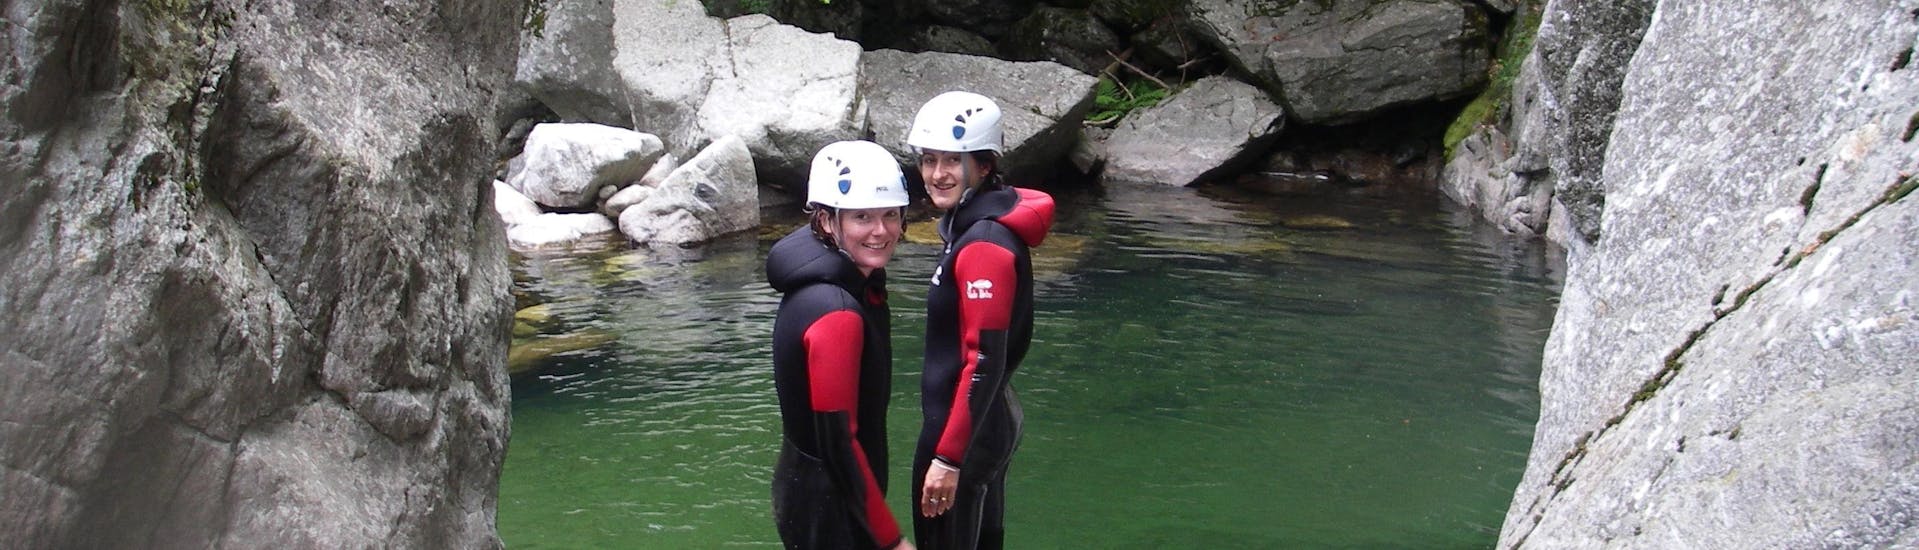 Dos amigos se preparan para tirarse a una piscina esmeralda durante su barranquismo acuático en el Cañón de la Borne, con Geo Ardèche Canyon.